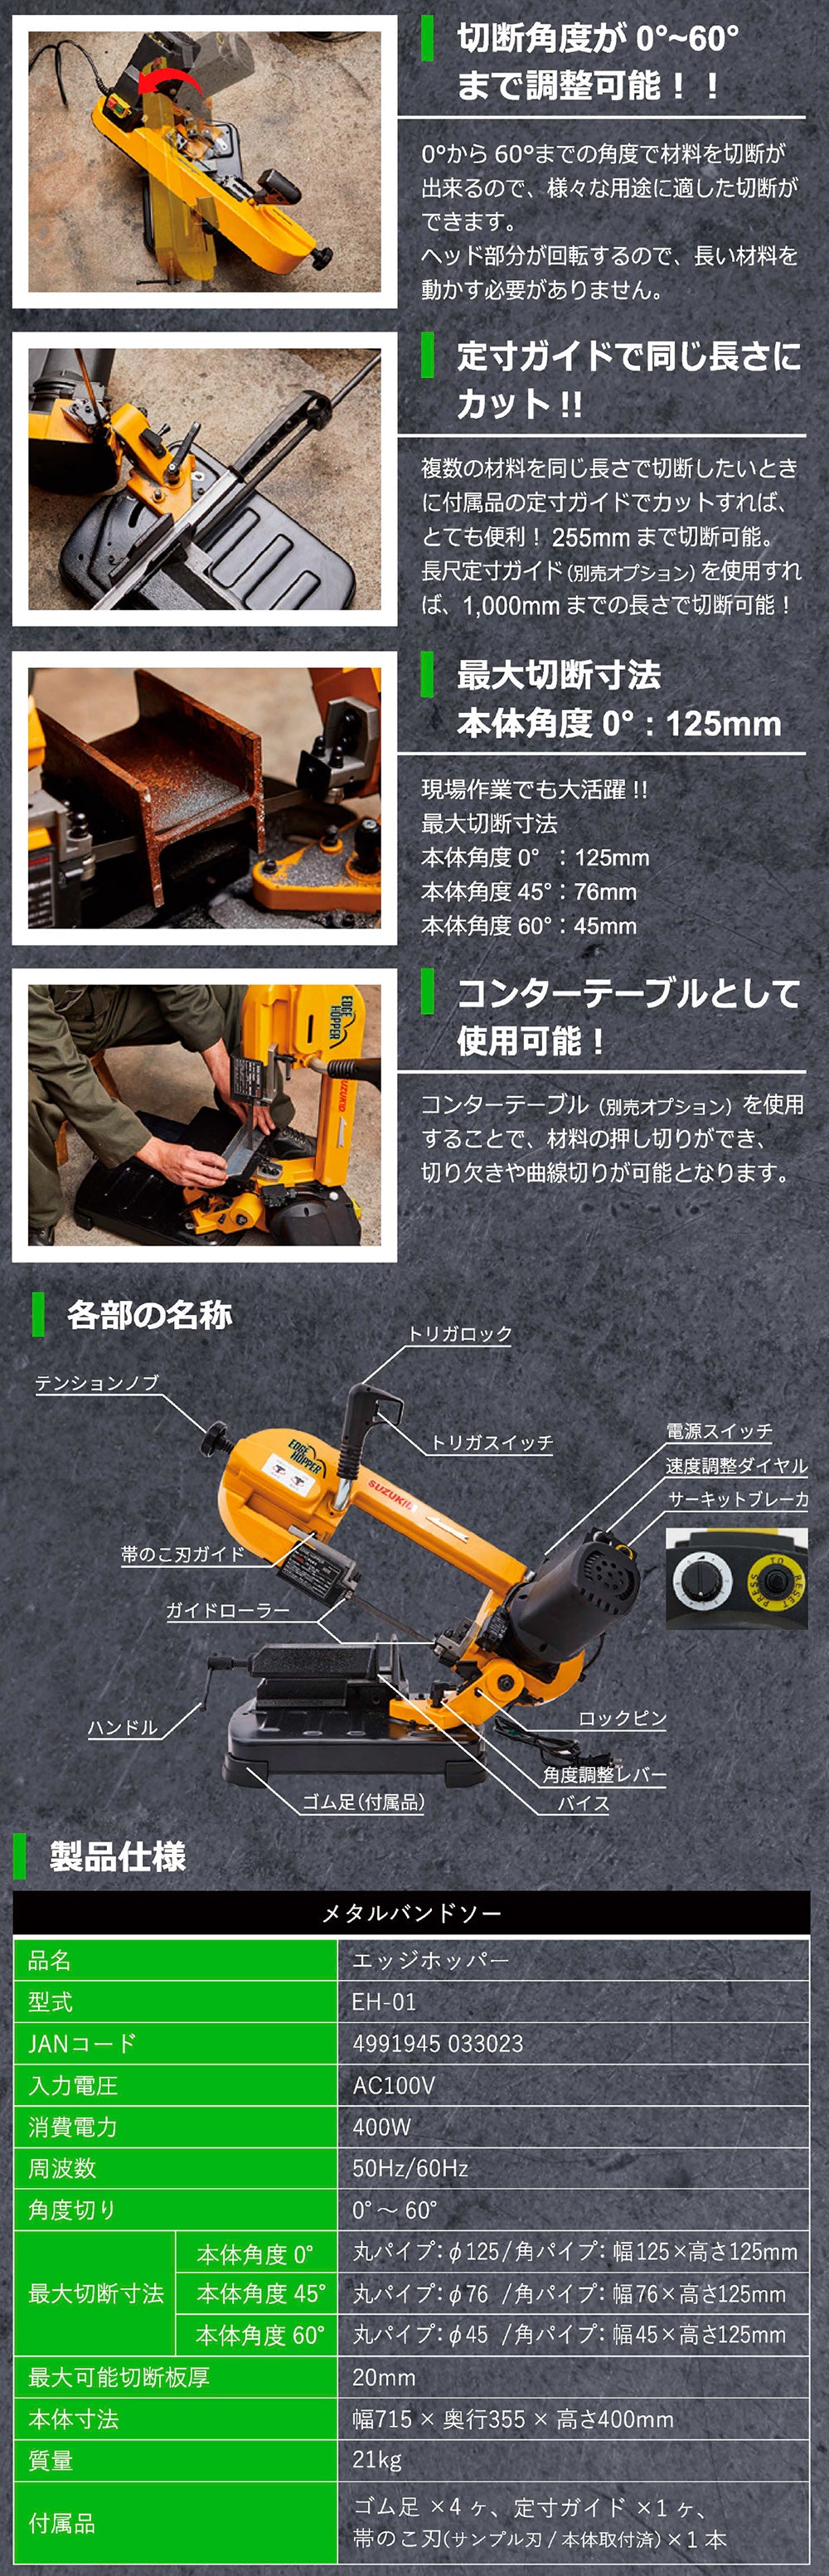 スター電器製造(SUZUKID) エッジホッパー EH-01 - 工具、DIY用品